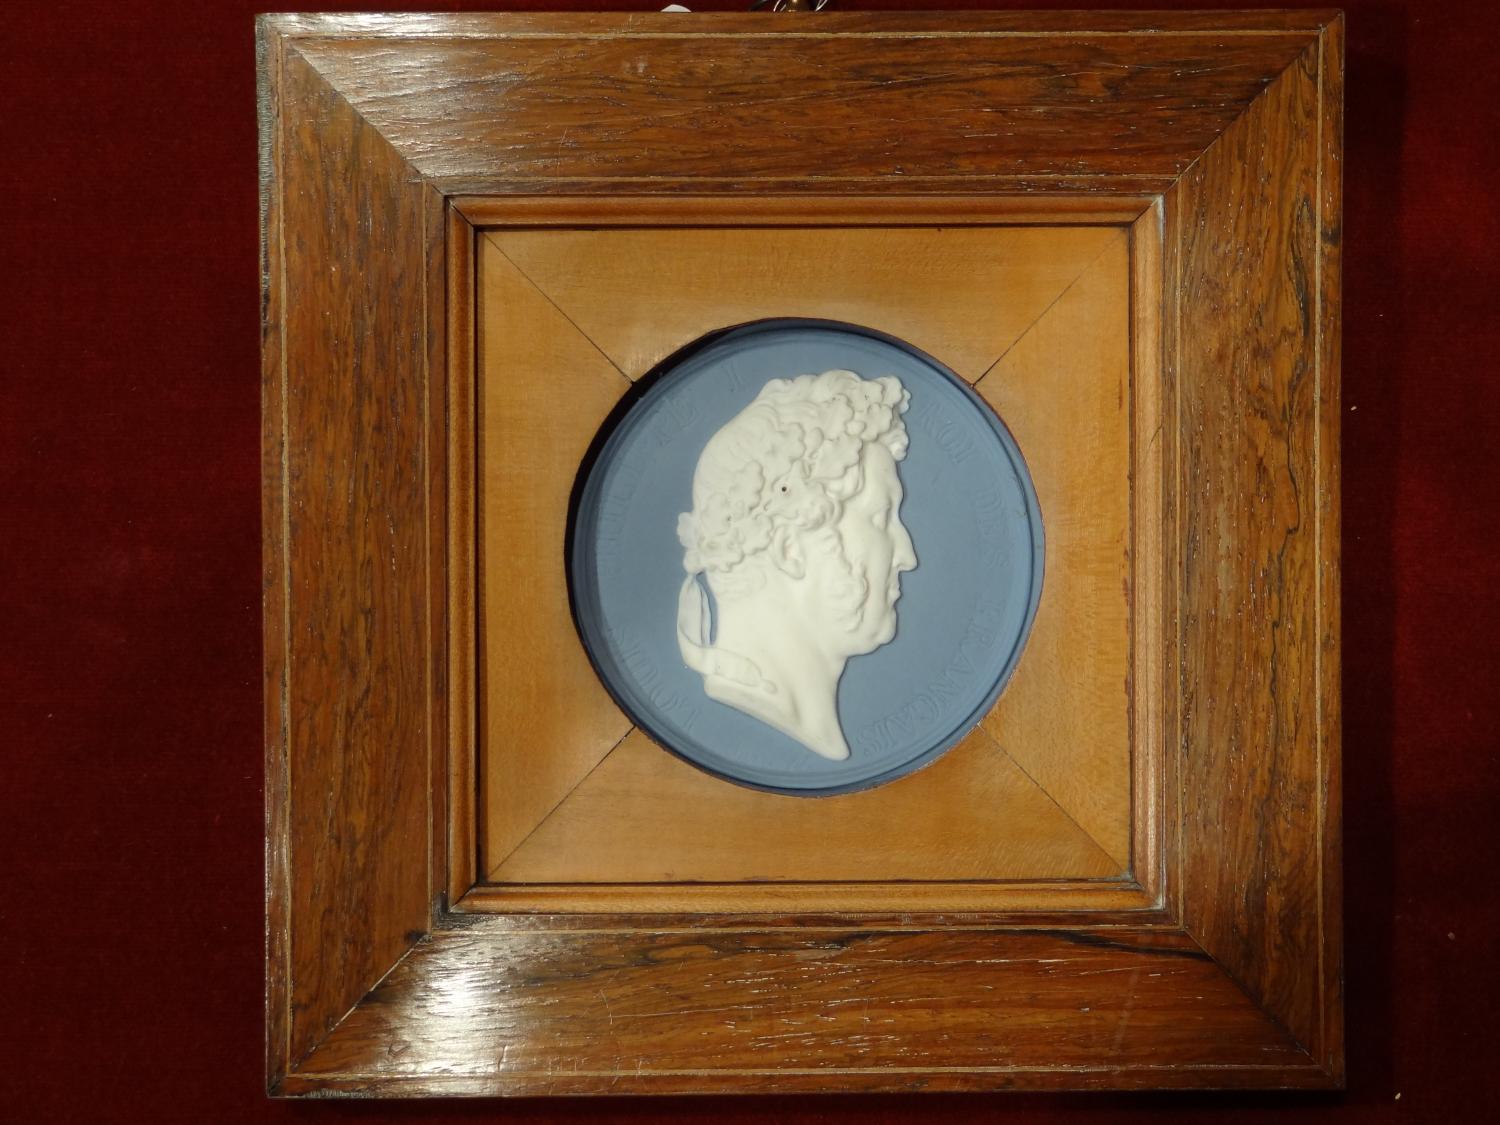 Médaillon avec le profil du roi Louis-Philippe Ier